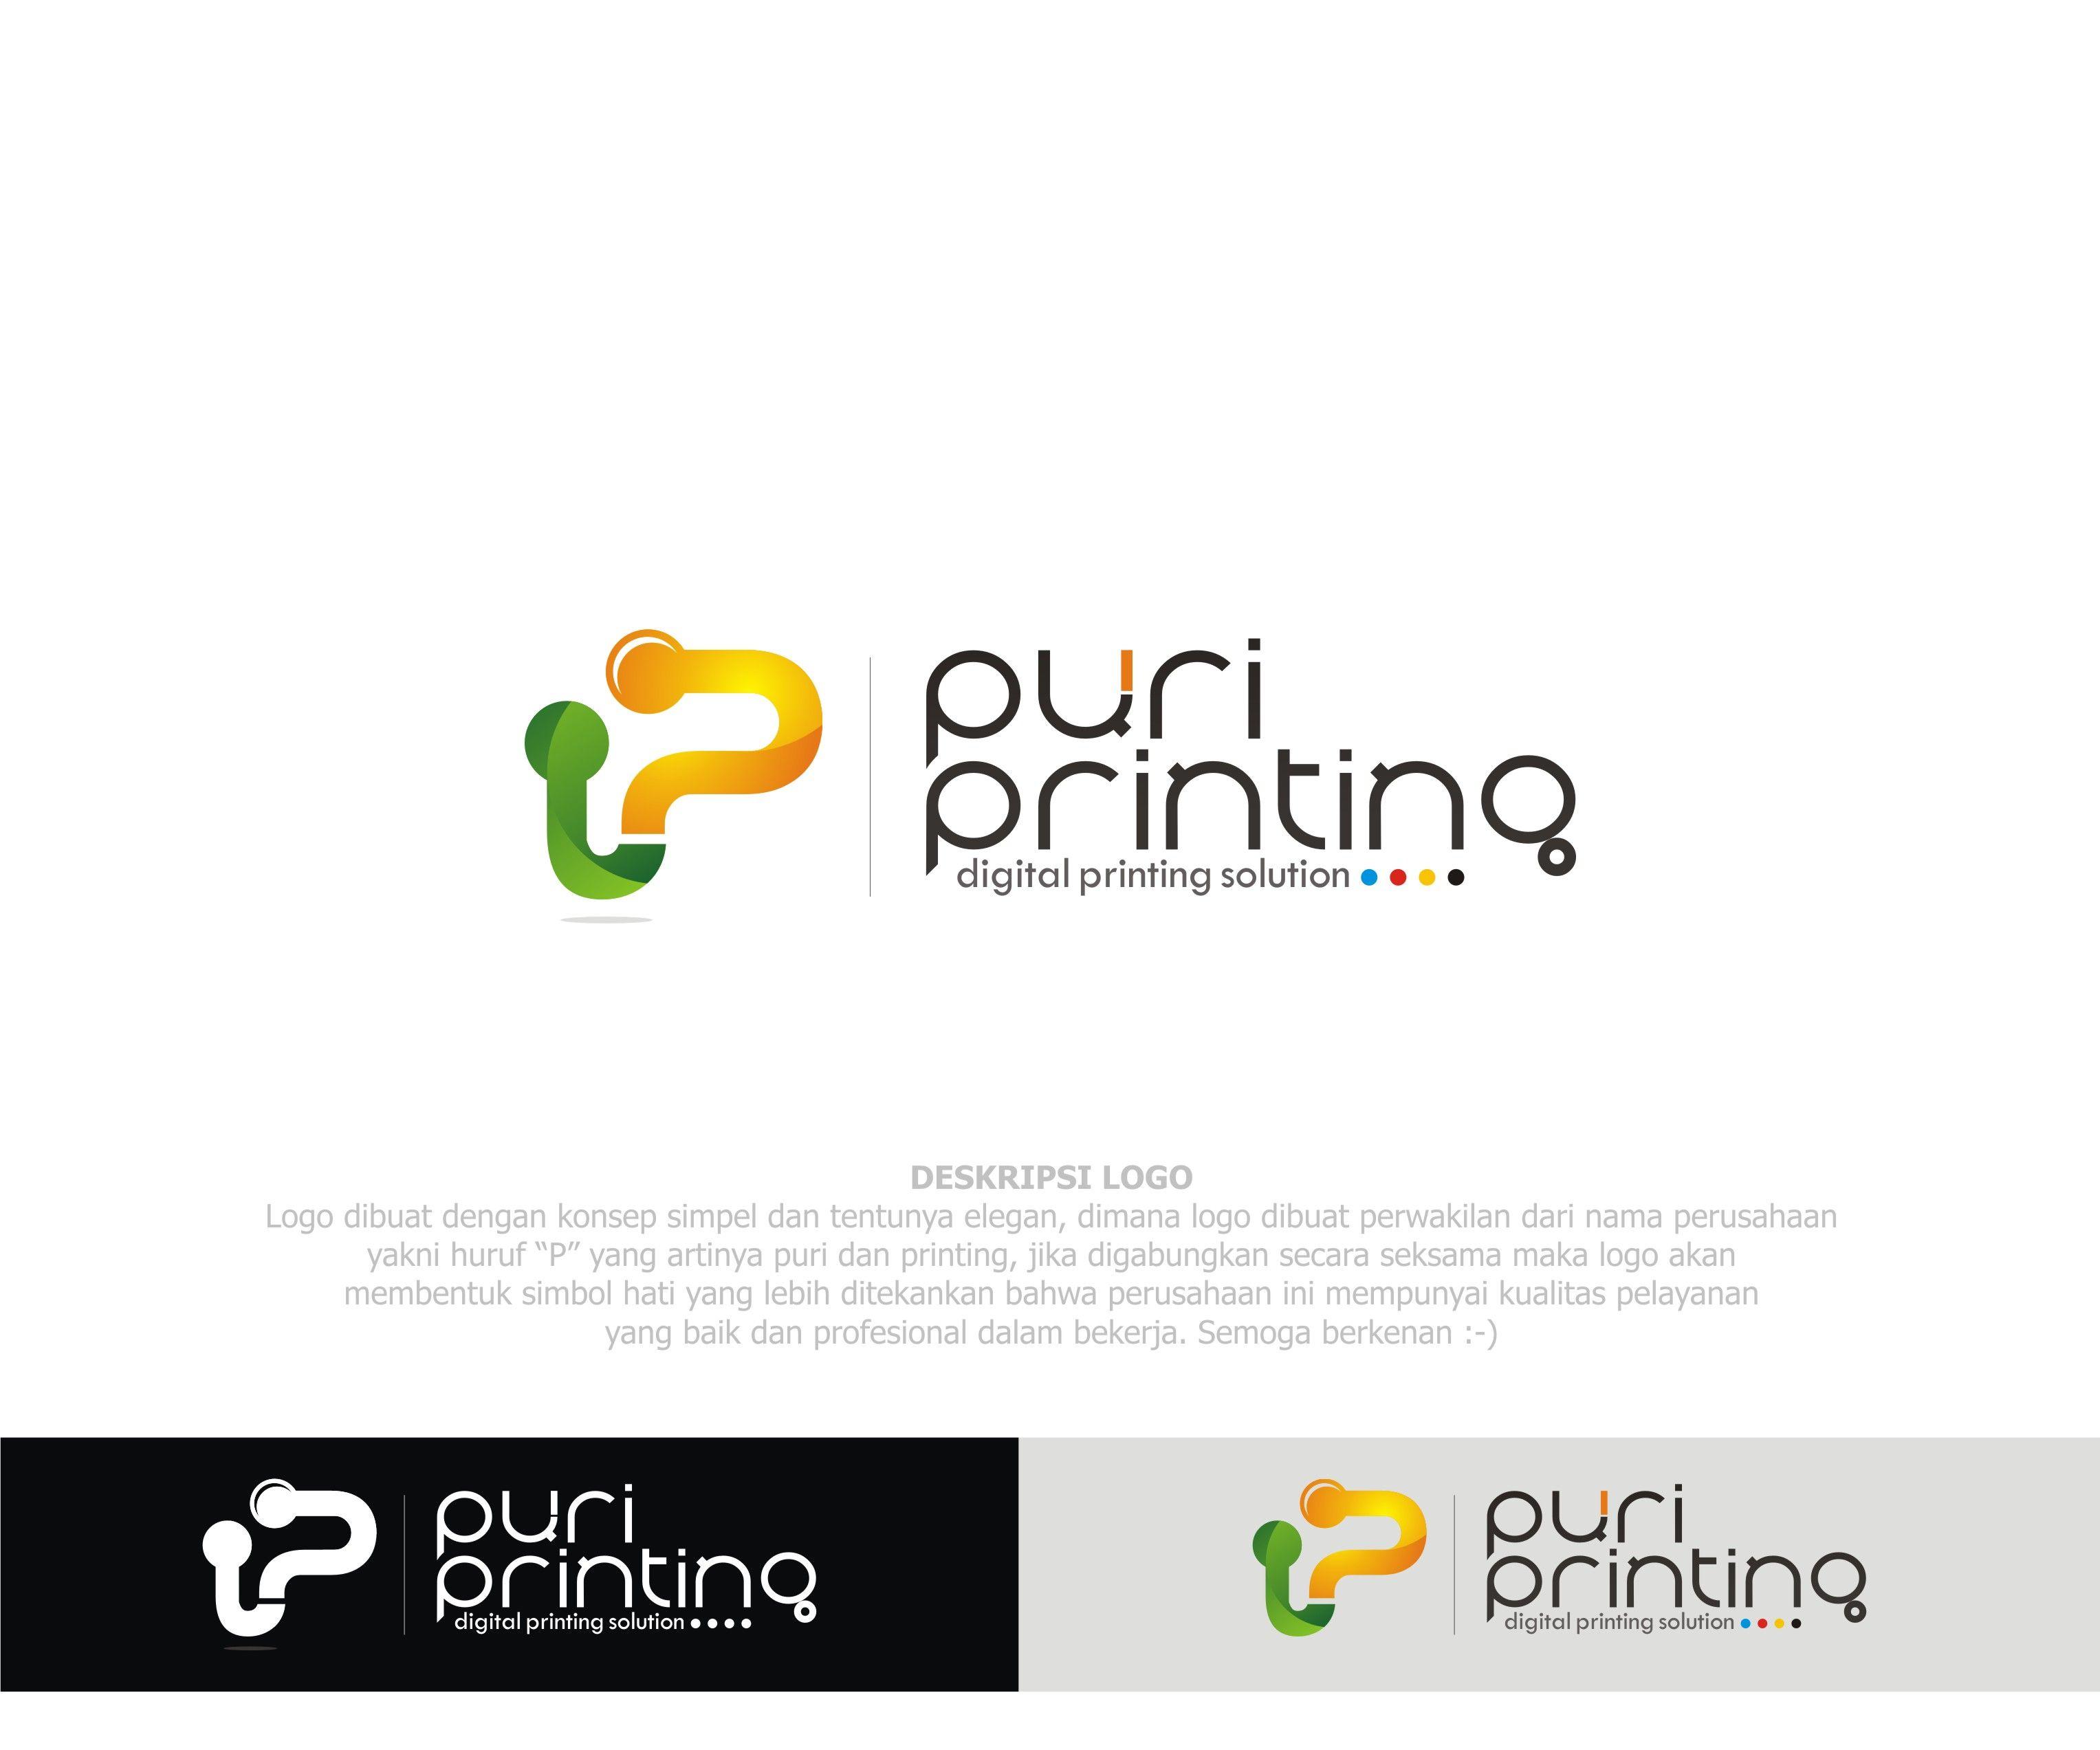 Digital Printing Logo - Gallery. Logo untuk perusahaan digital printing